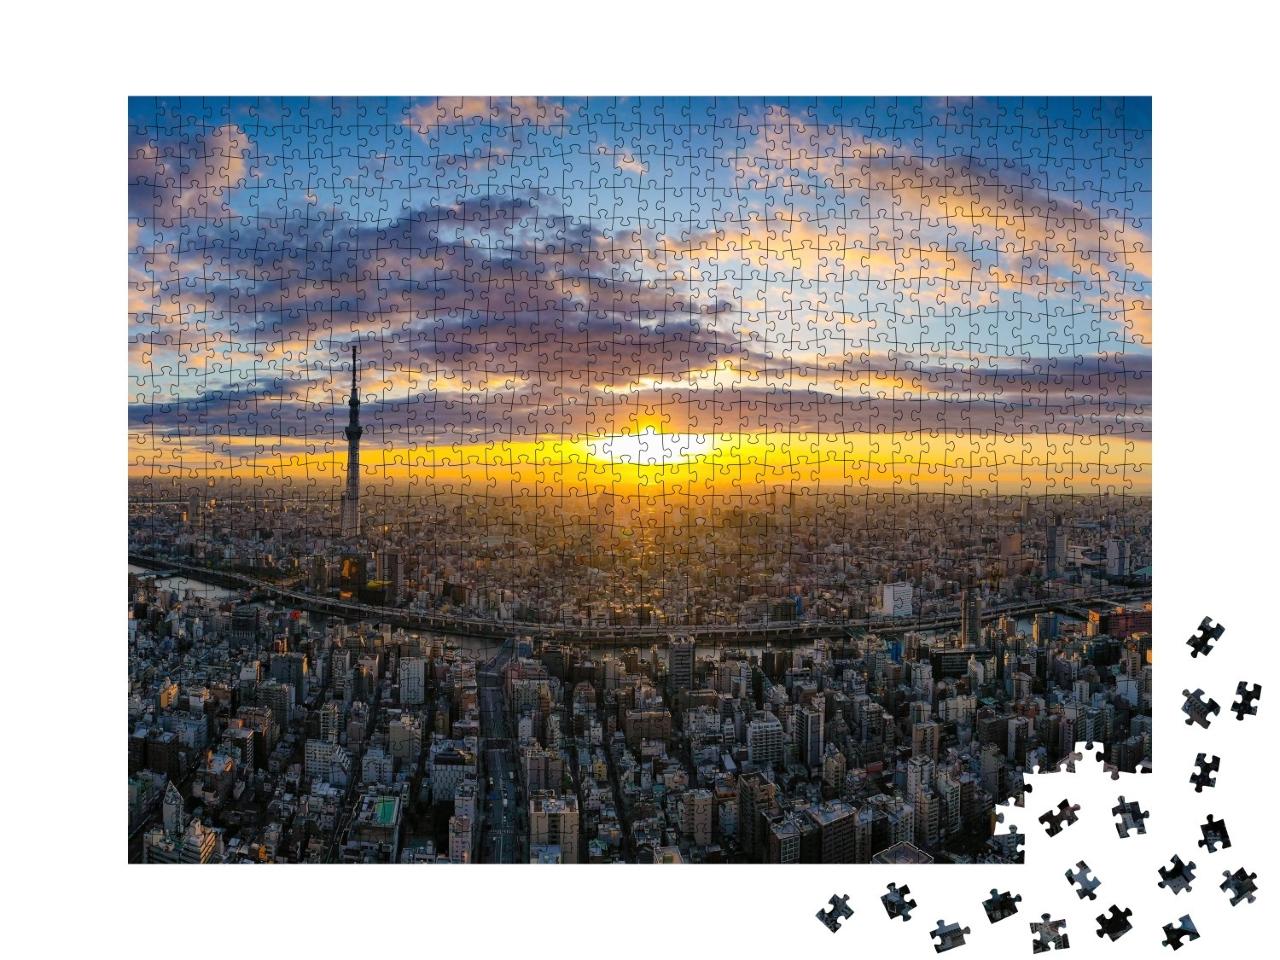 Puzzle de 1000 pièces « Tokyo sous la lumière du soleil levant »